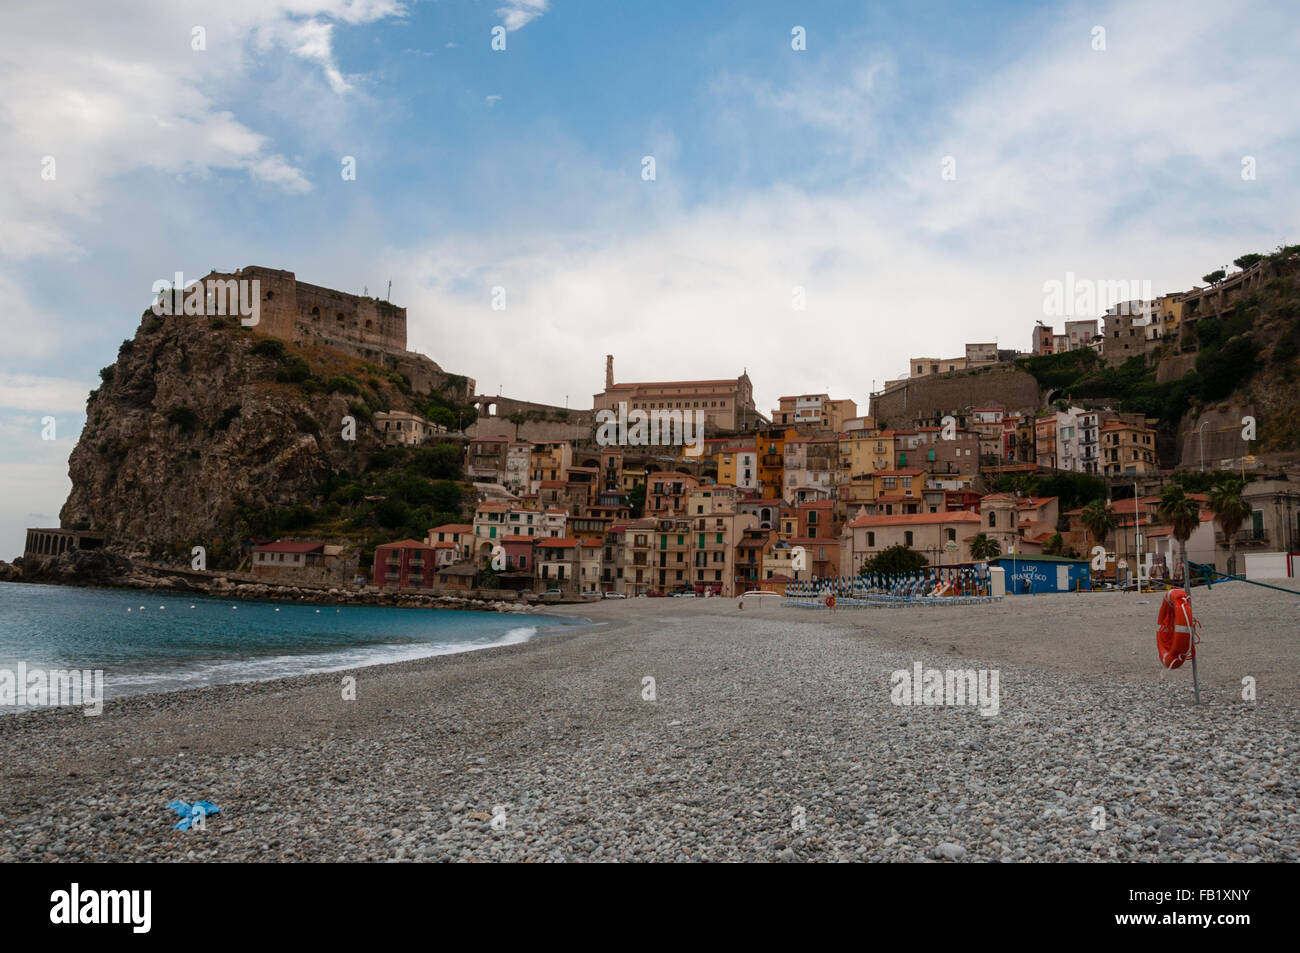 Playa de piedra antigua y pequeña ciudad italiana sobre un acantilado bajo un cielo azul Foto de stock